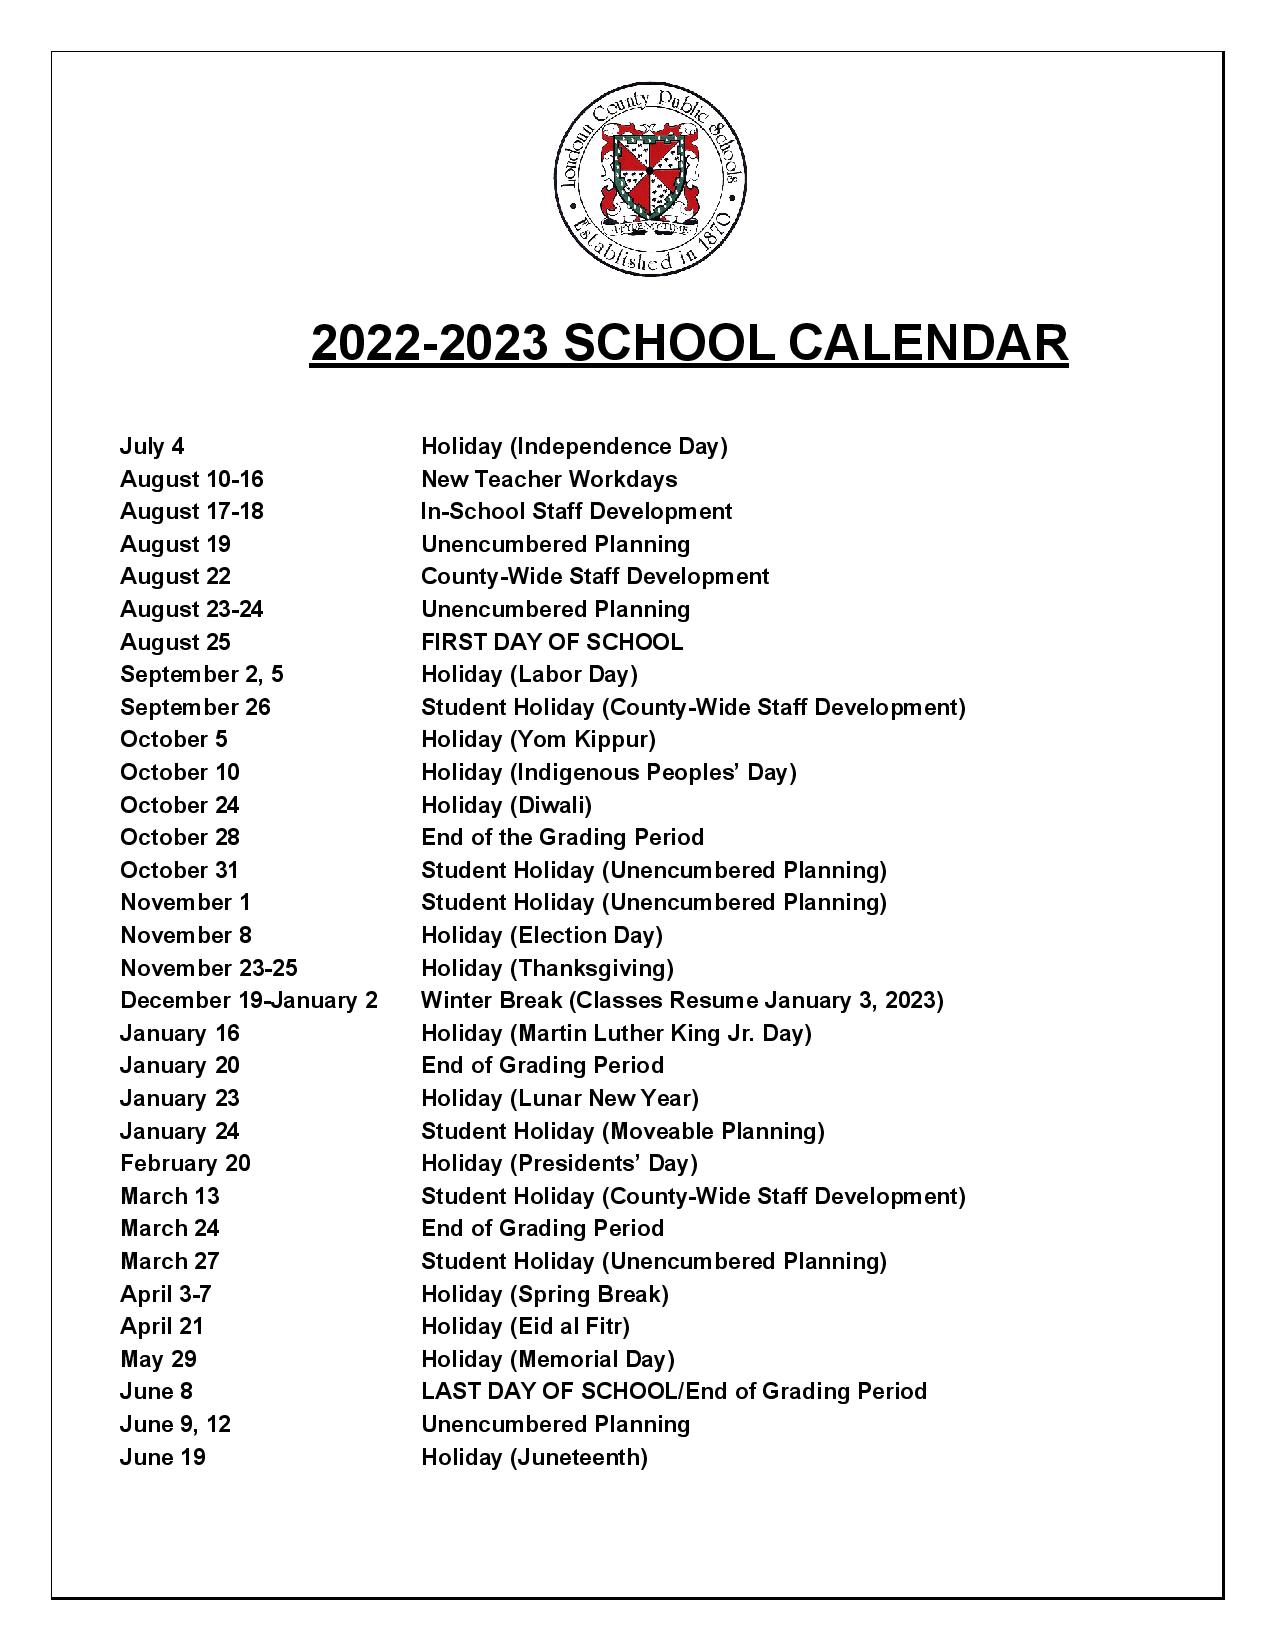 Loudoun County Public Schools Calendar Holidays 2022 2023